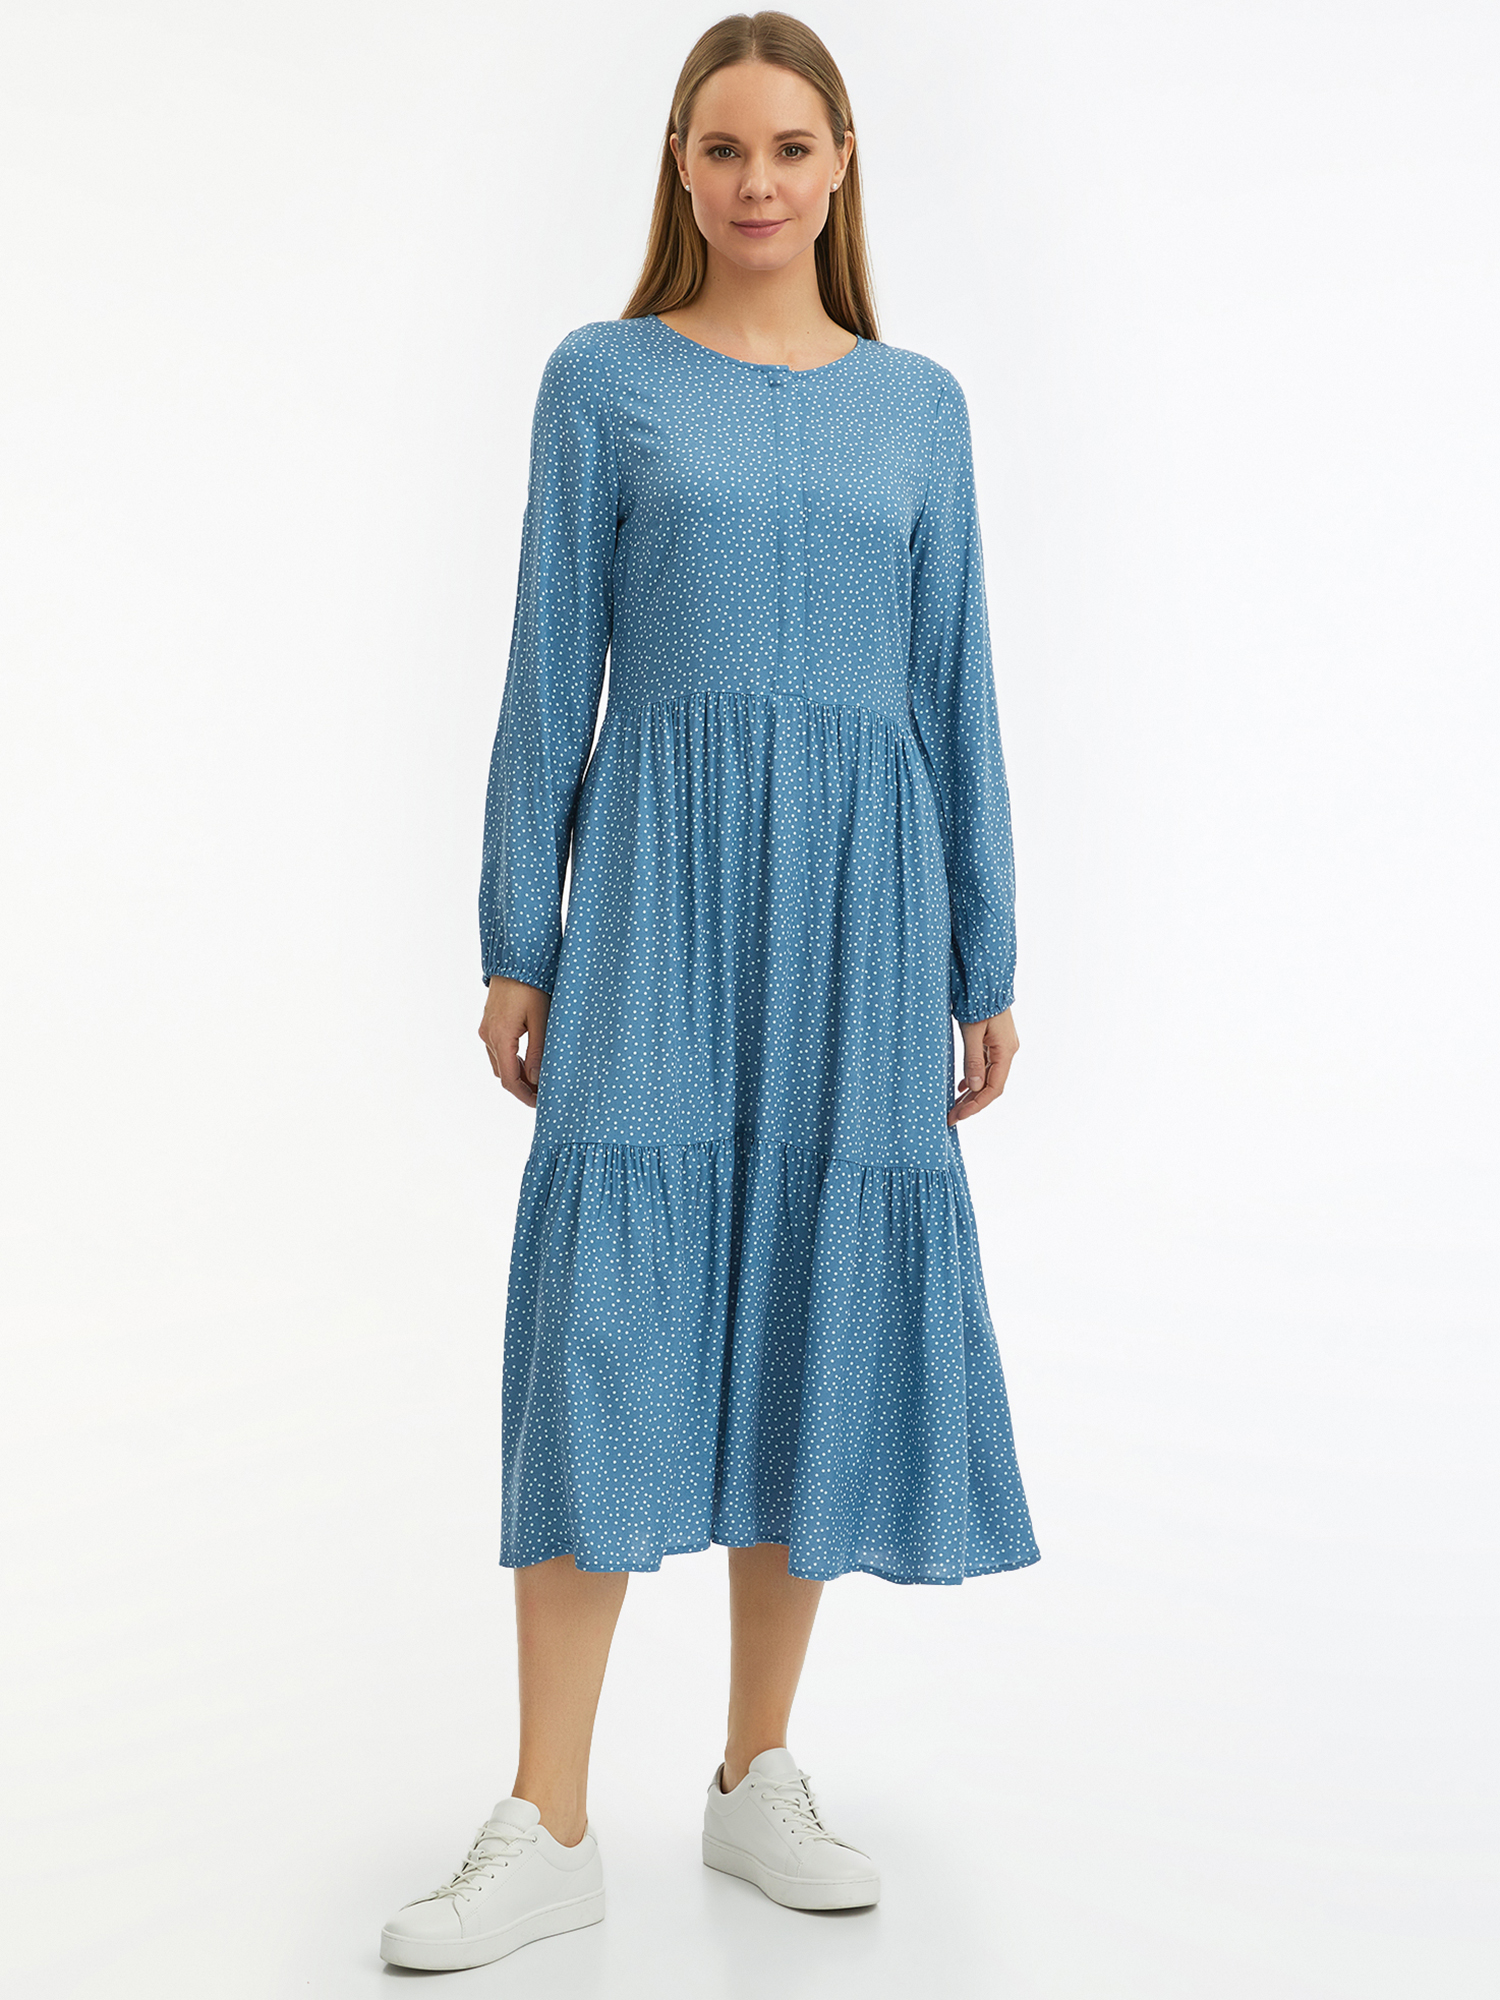 Платье женское oodji 11901165-1 синее 44